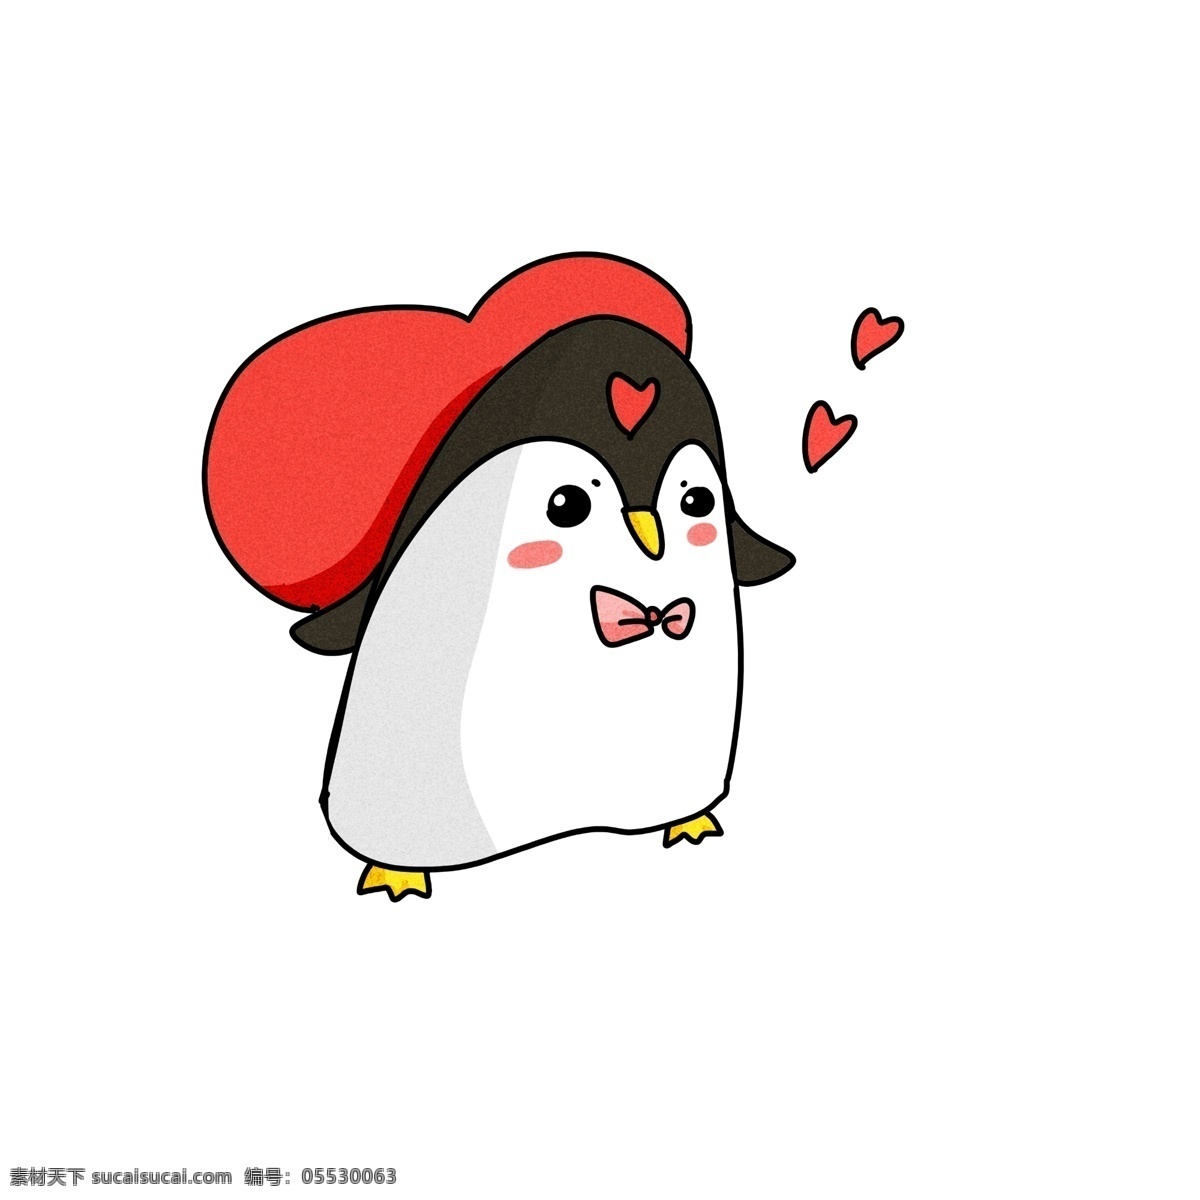 黑色 爱情 企鹅 插画 红色的桃心 卡通爱情企鹅 漂亮 手绘爱情企鹅 爱情企鹅插画